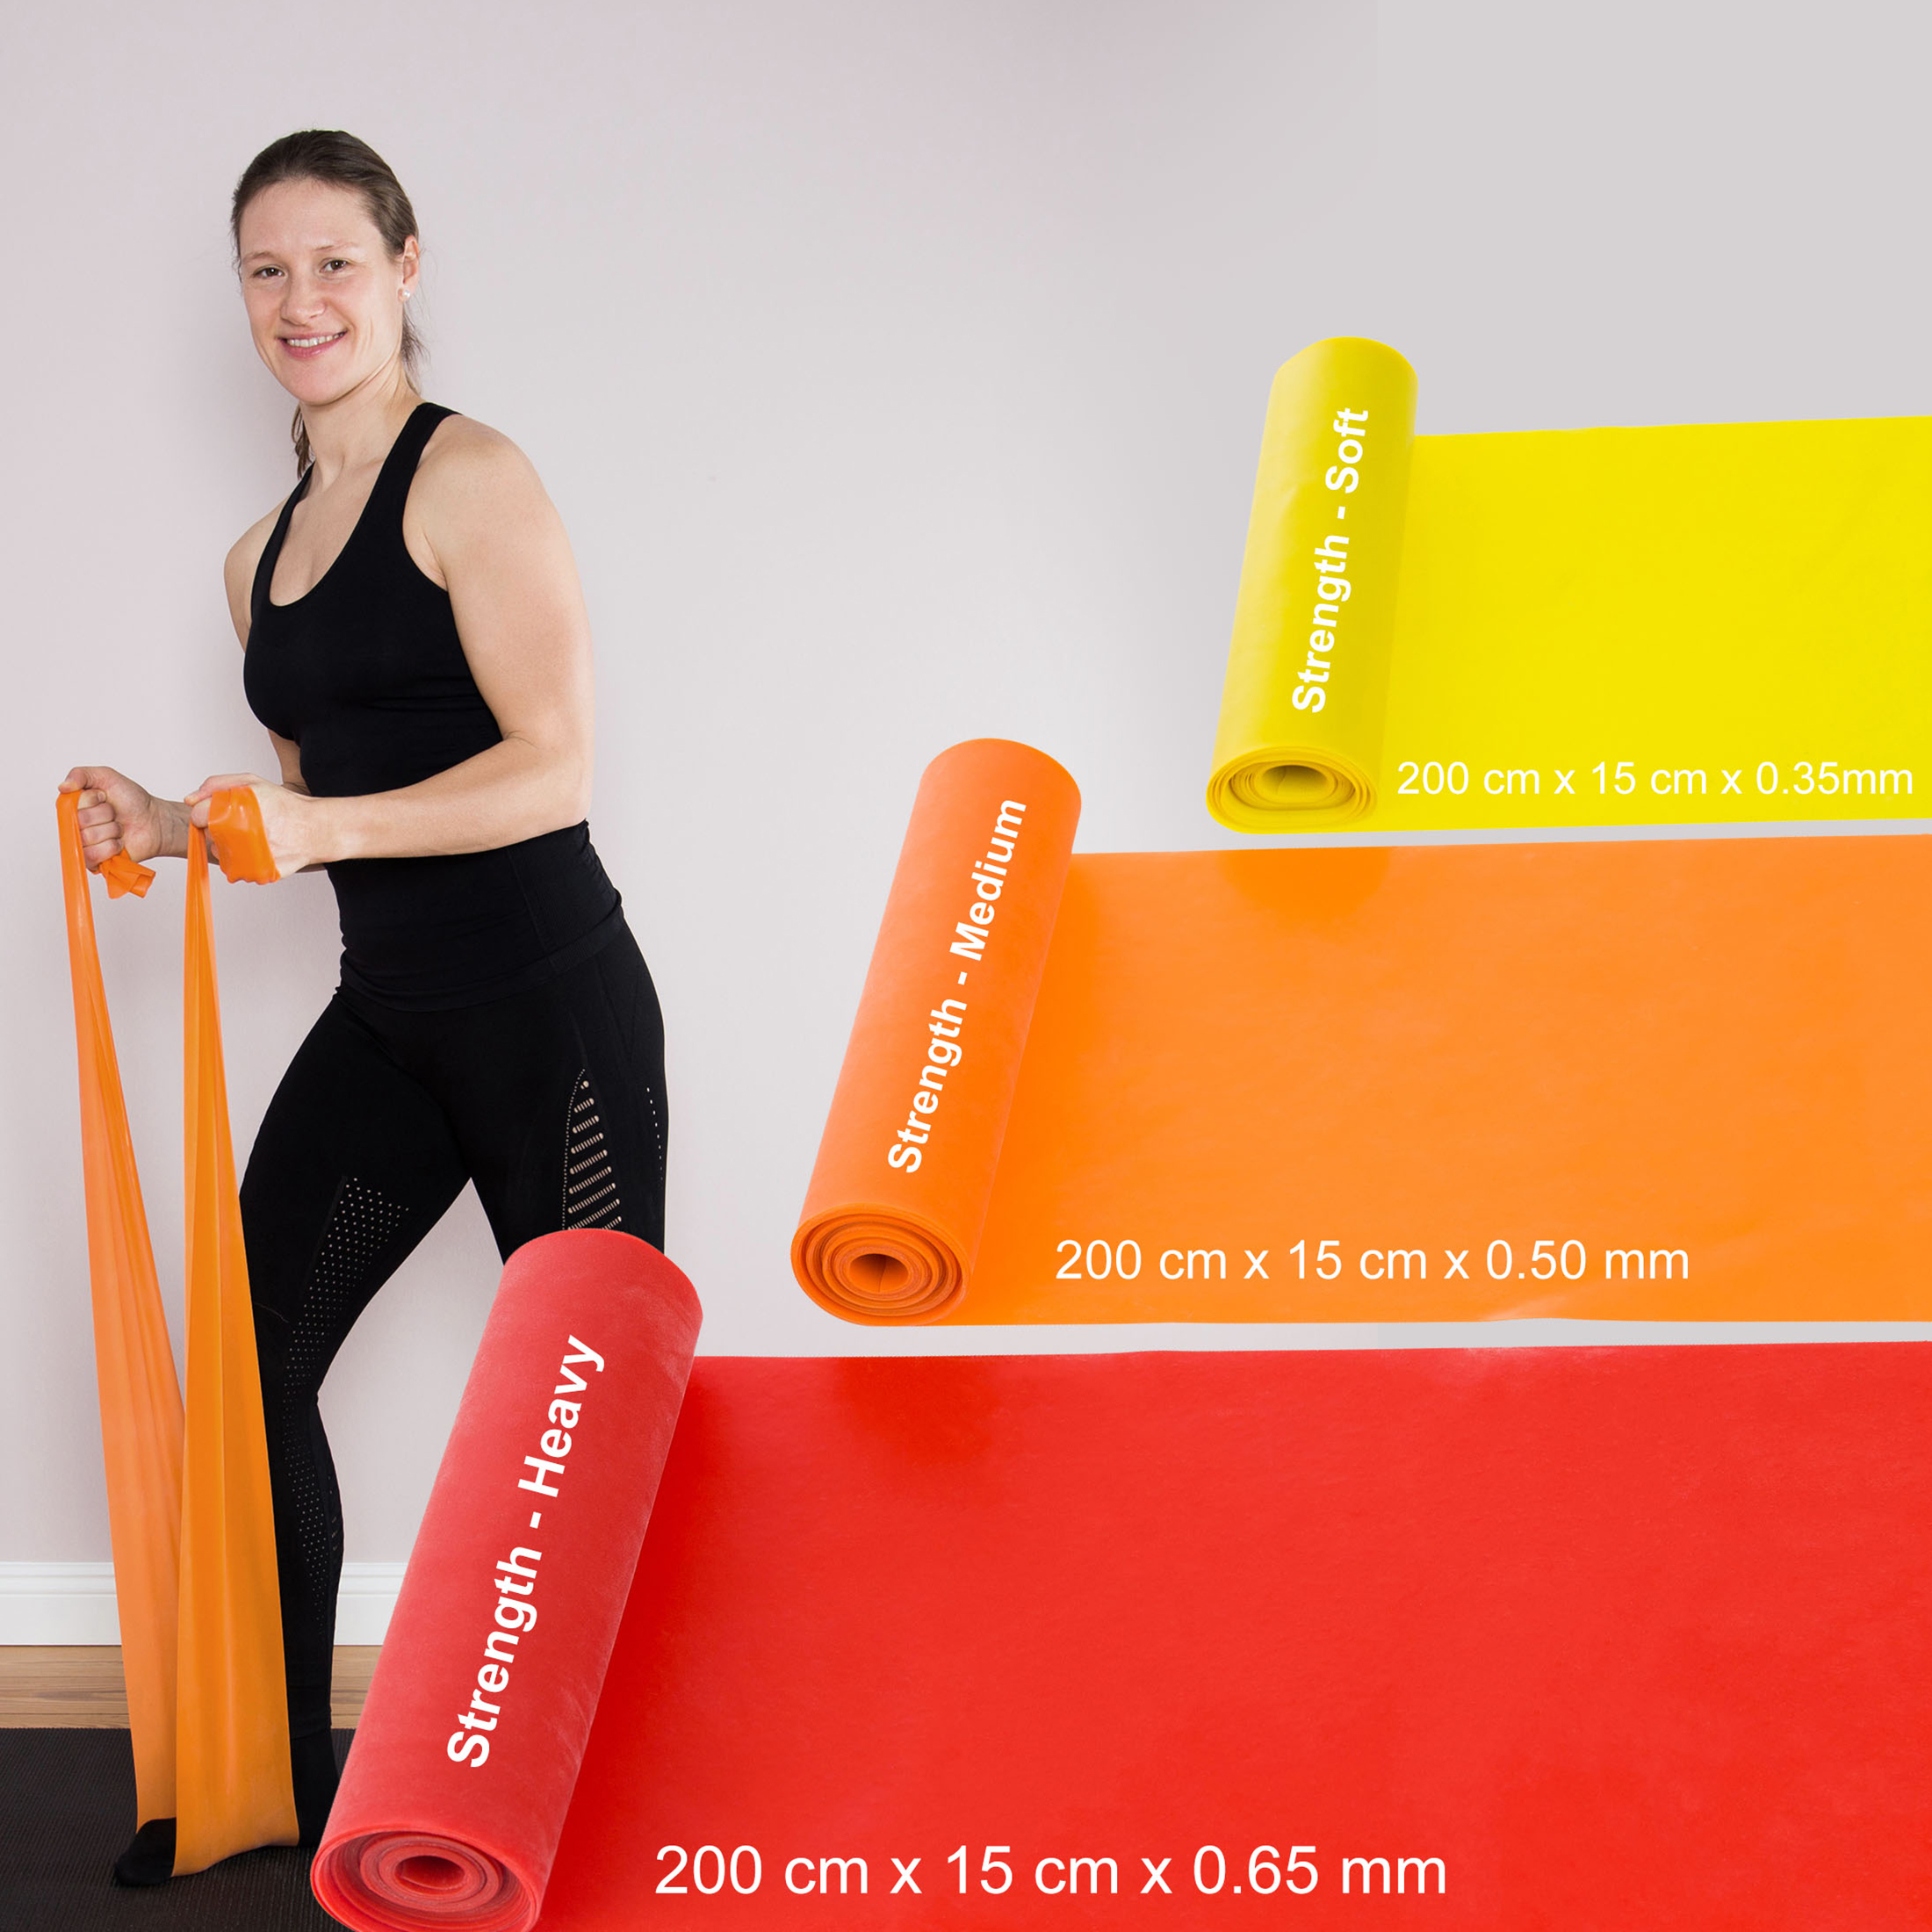 Krafttraining Widerstand, Elastische elastisches für zuhause ZOOMYO Stretchband, mit unterschiedlichem Orange Trainingsband Fitnessband